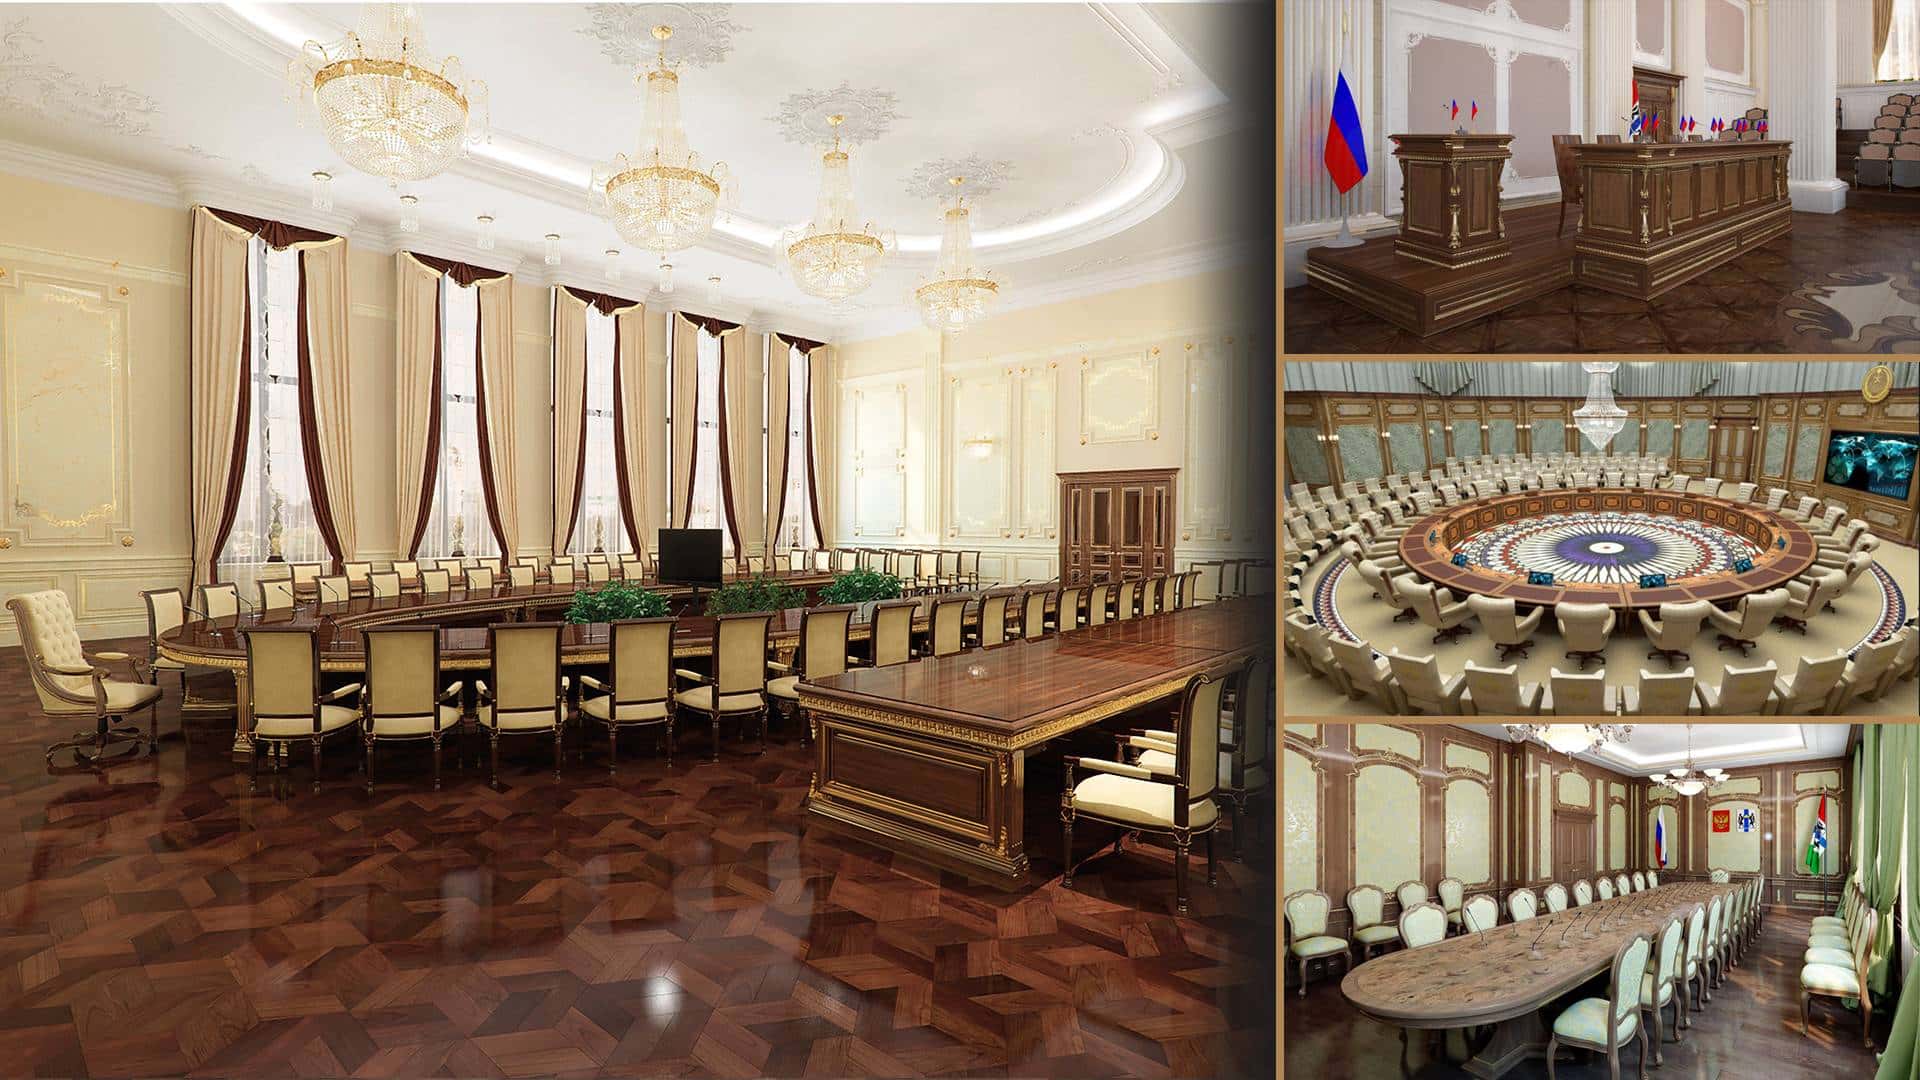 projekty vládních kanceláří velvyslanectví prezidentské kanceláře vybavení na míru výroba luxusního kl sického nábytku královské stylové interiéry exkluzivní designový projekt